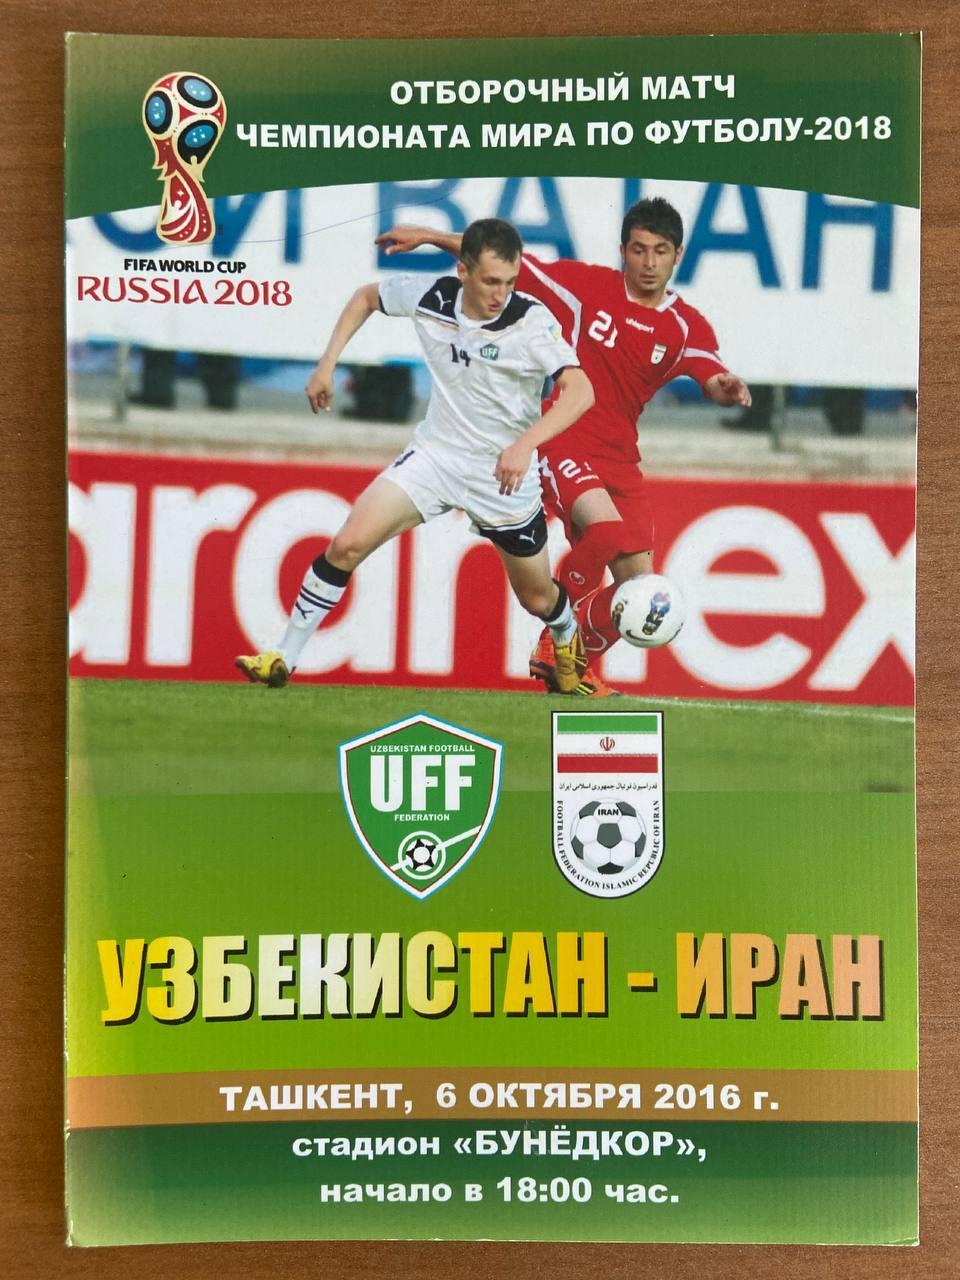 Узбекистан (сборная) - Иран (сборная), 6 октября 2016 г.